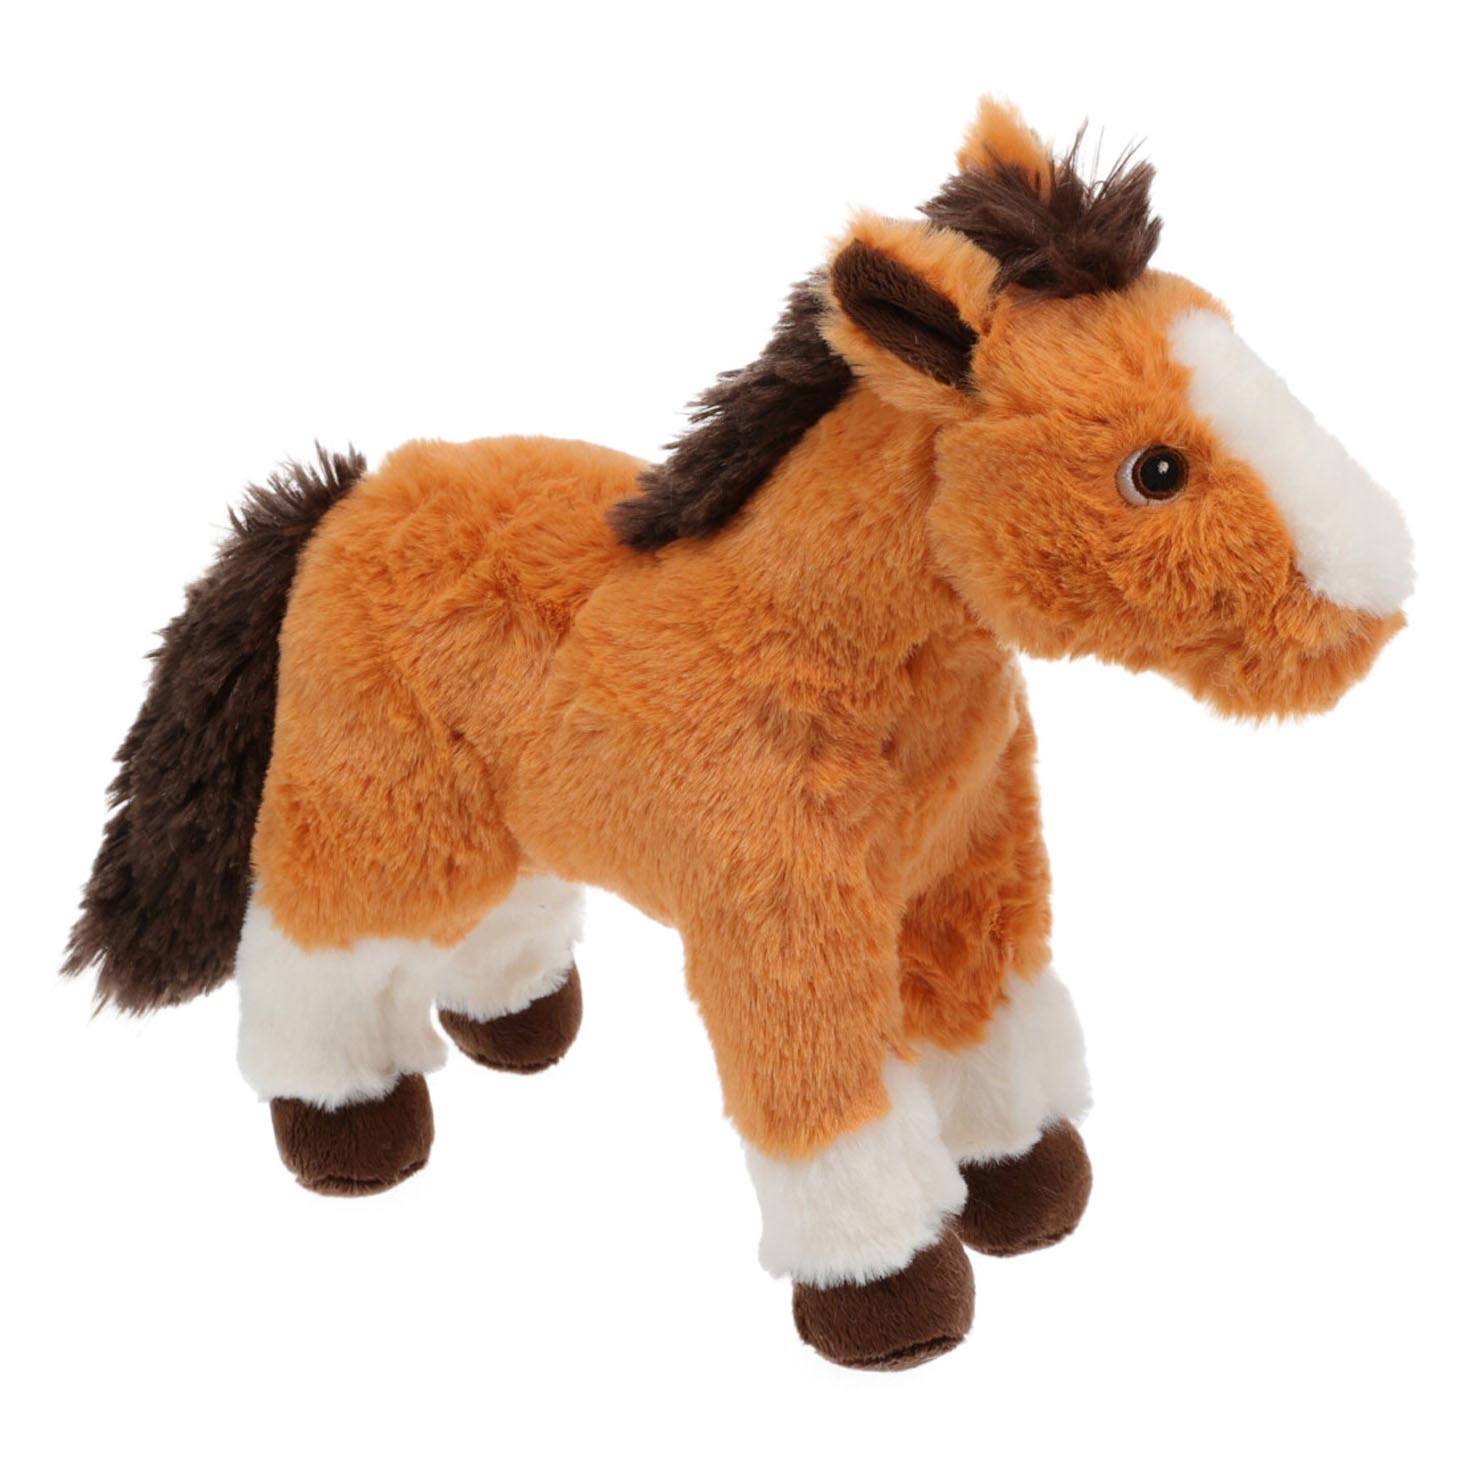 medeklinker realiteit meer Titicaca Knuffel Paard - Bruin online kopen? | Lobbes Speelgoed